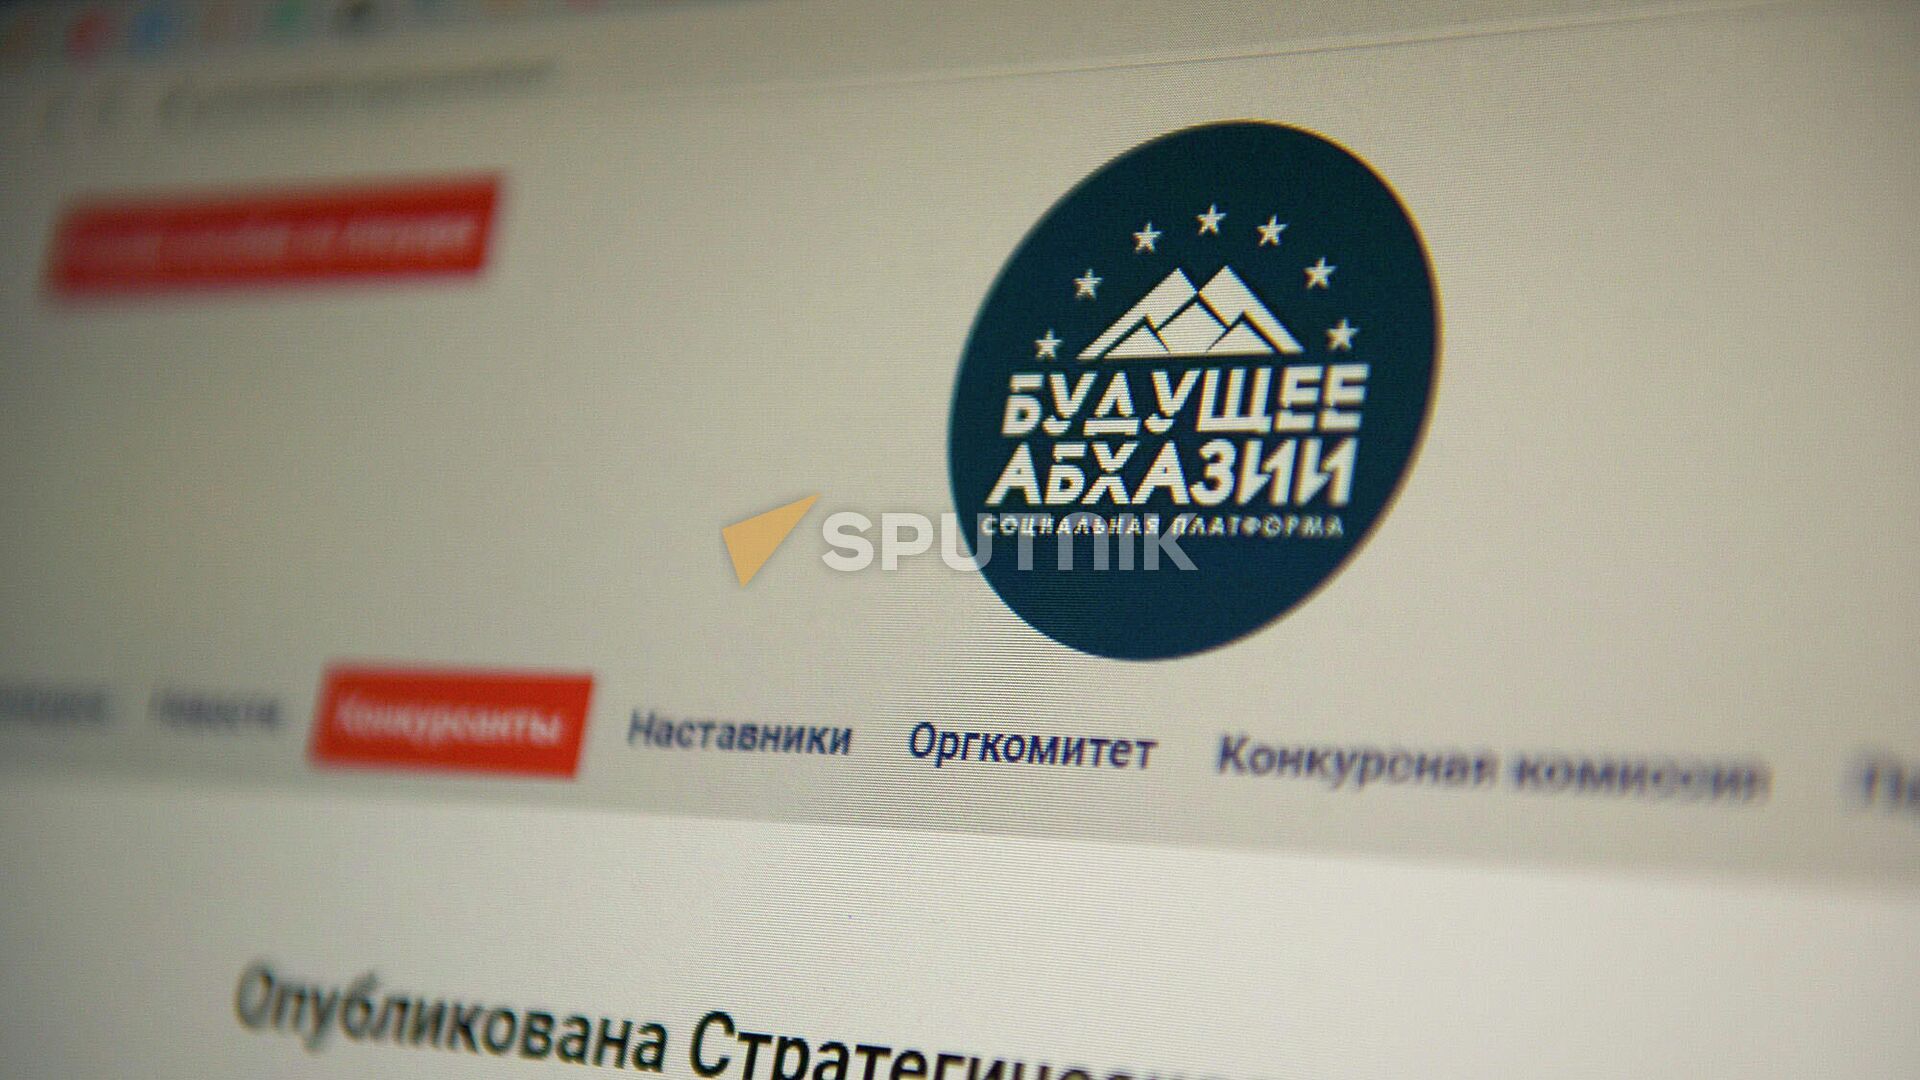 Программа реформ Будущее Абхазии была разработана финалистами конкурса Гордость Абхазии - Sputnik Абхазия, 1920, 14.02.2022